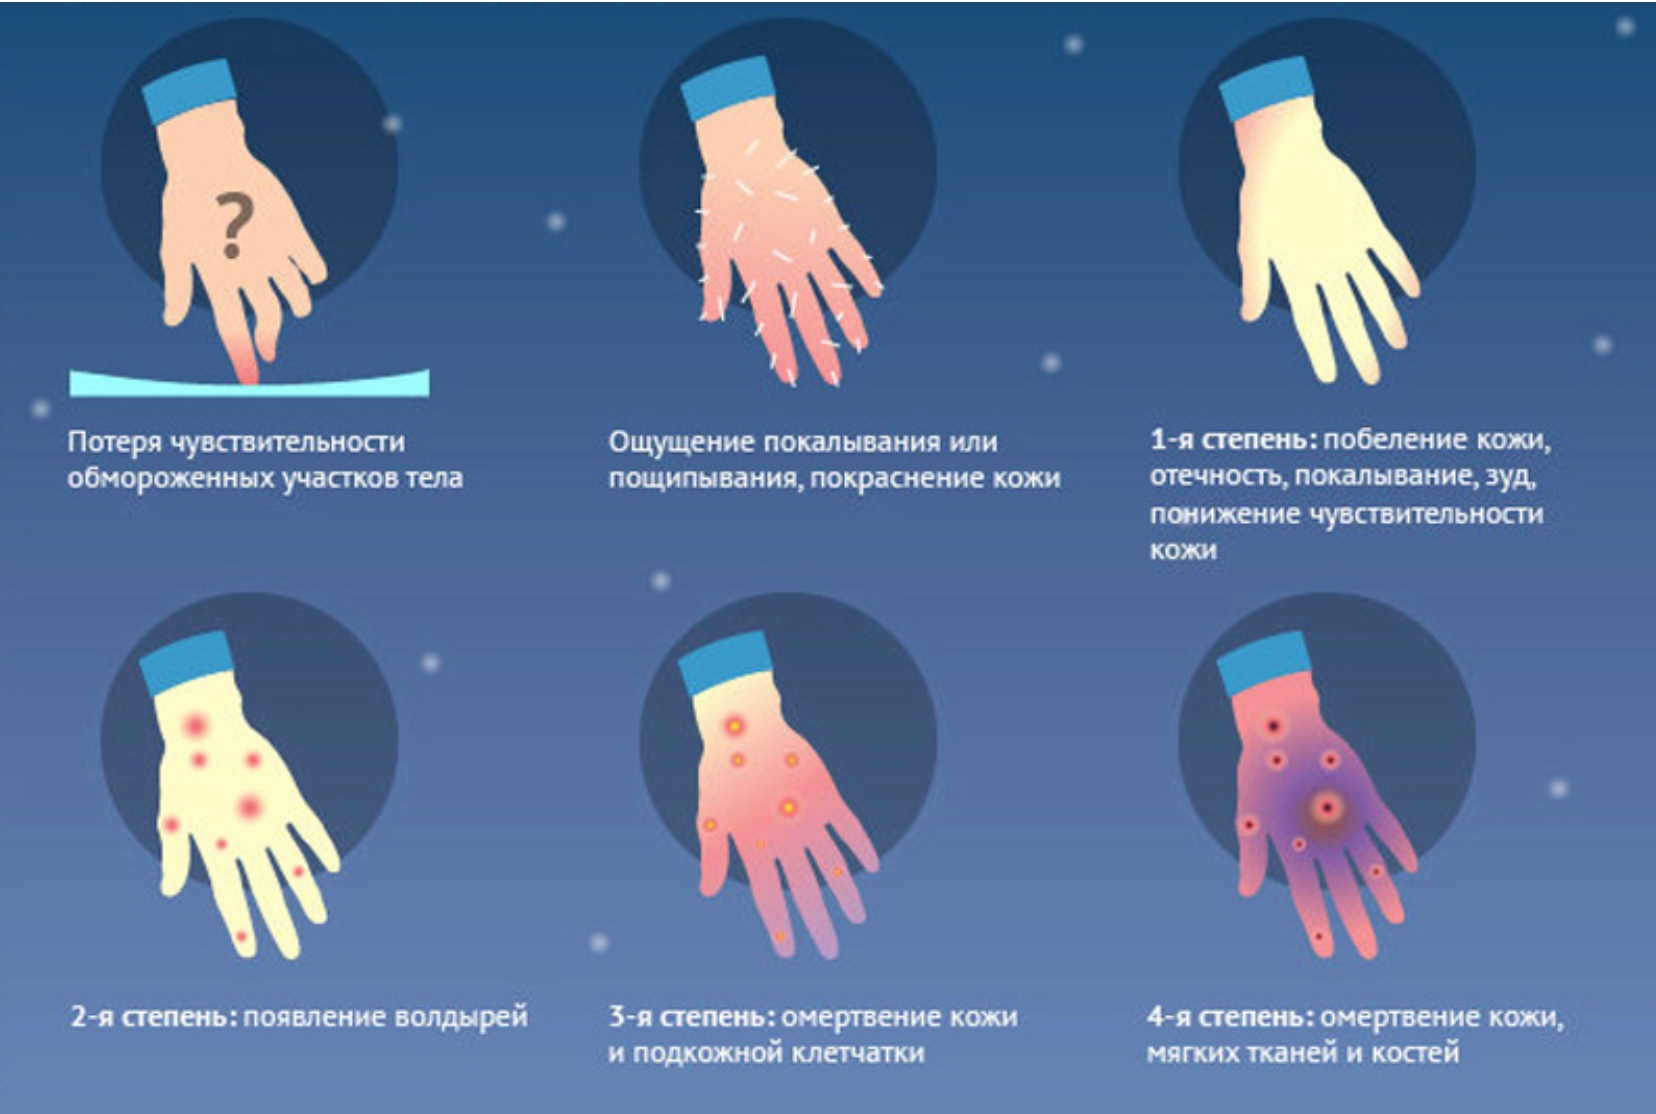 8 признаков, которые помогут понять, что грудничок замерз на прогулке